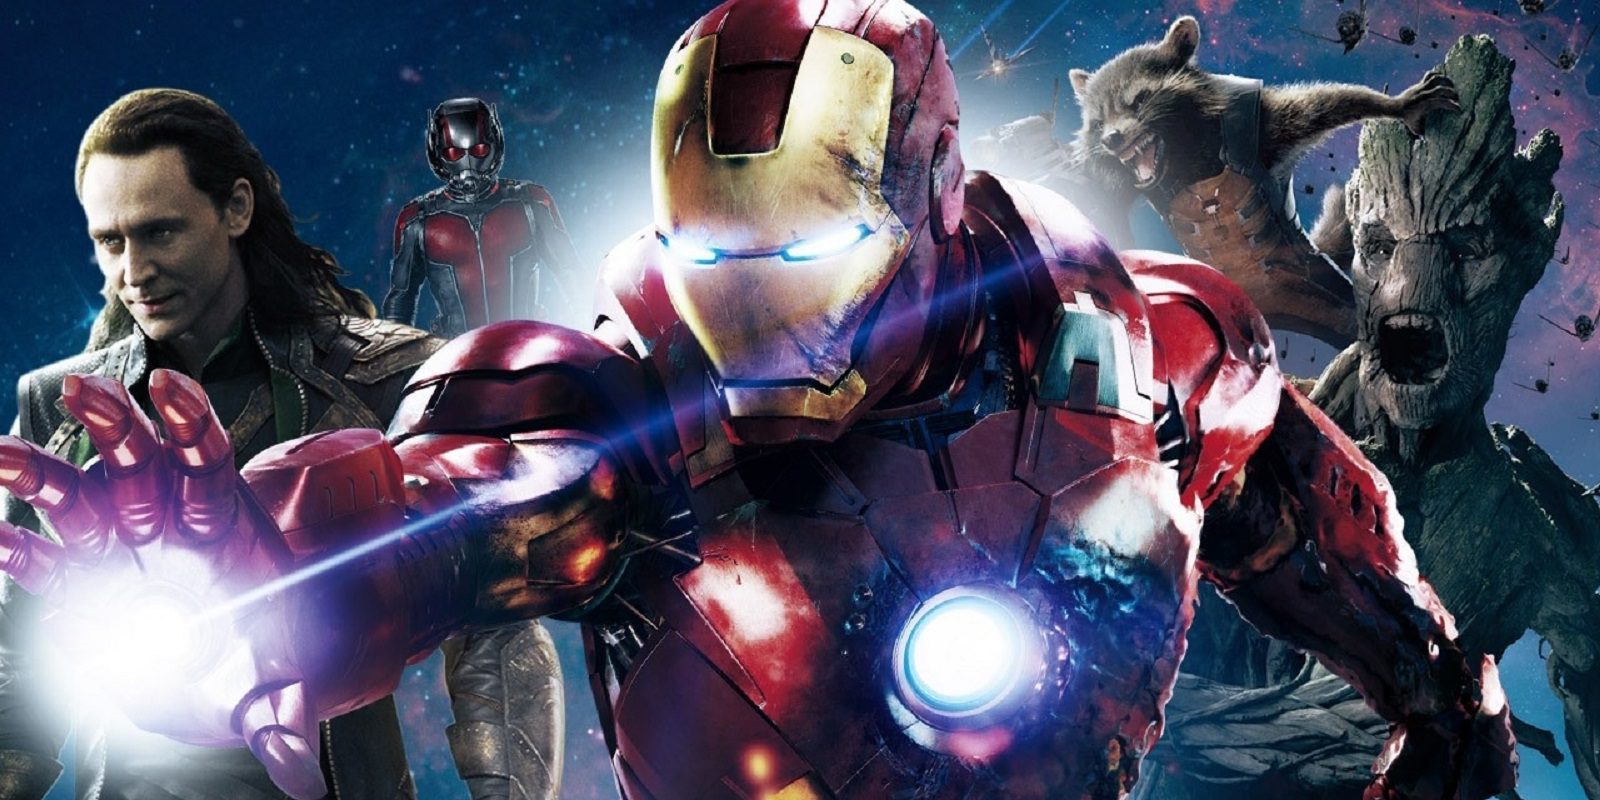 Habrá 20 películas más de Marvel tras 'Vengadores 4'